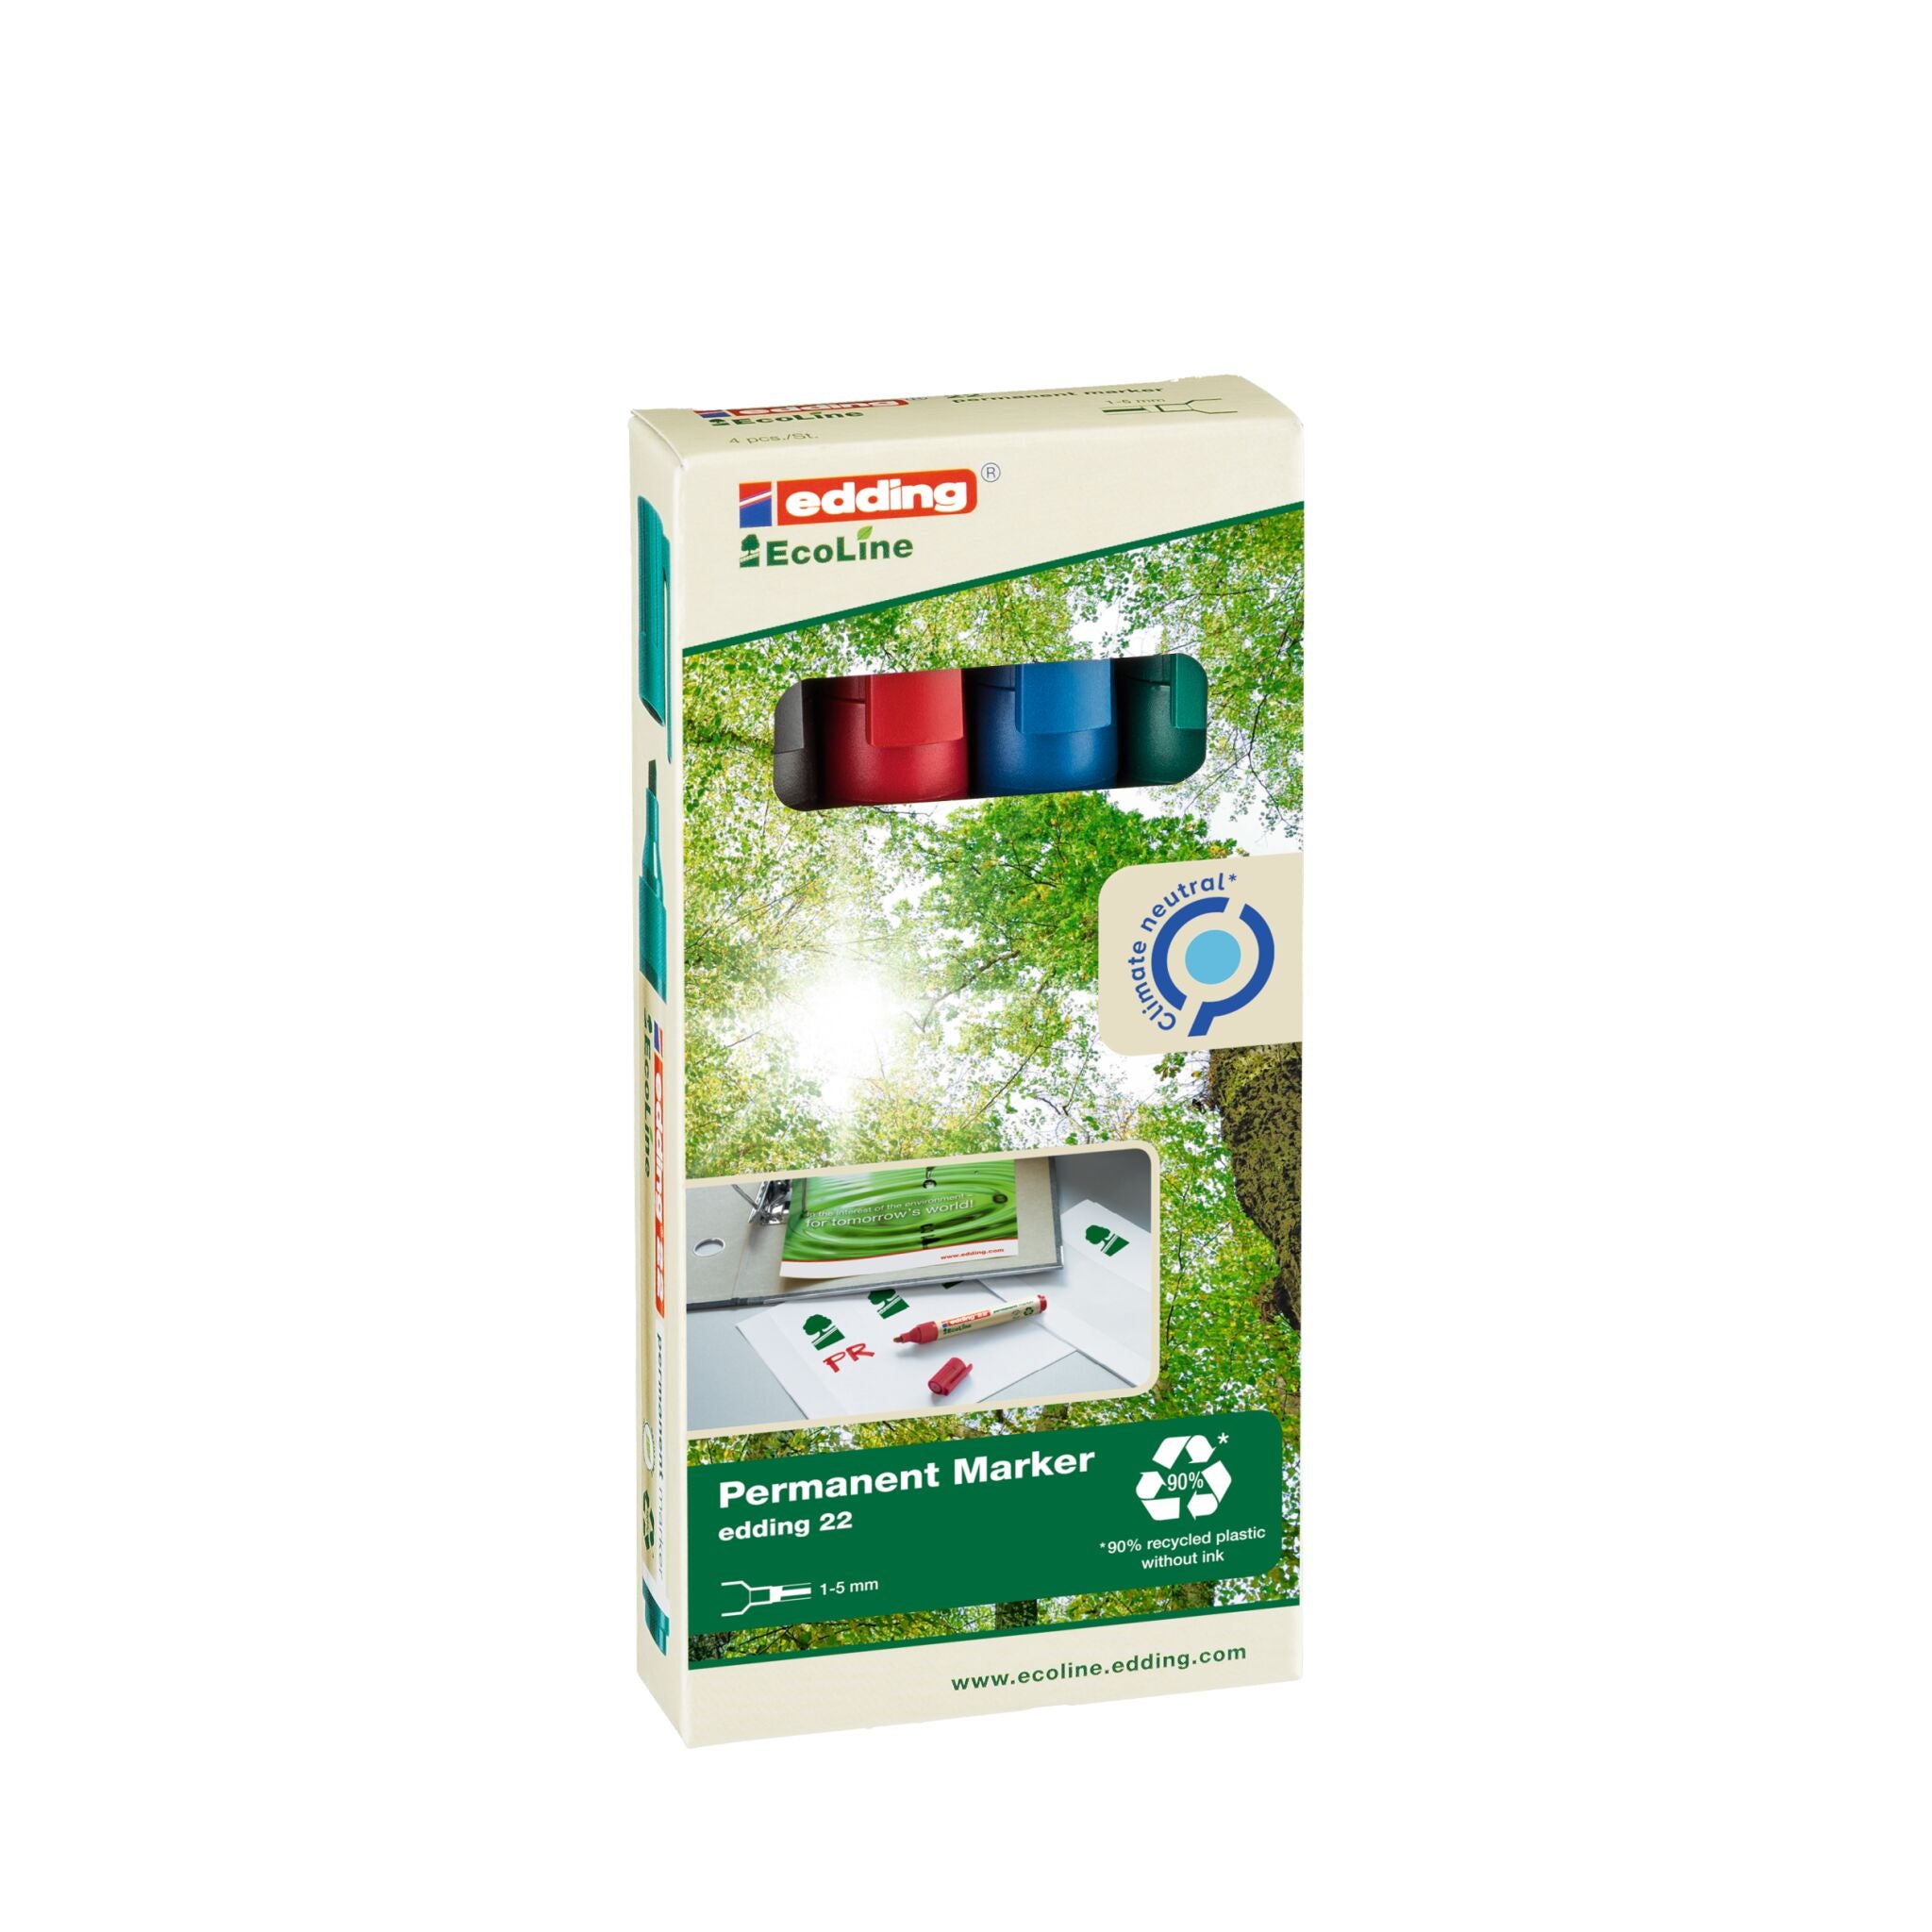 Beschreibung: Verpackung für umweltfreundliche edding 22 EcoLine Permanentmarker 4er-Set, die die Marker präsentiert und mit einem grünen, blättrigen H.